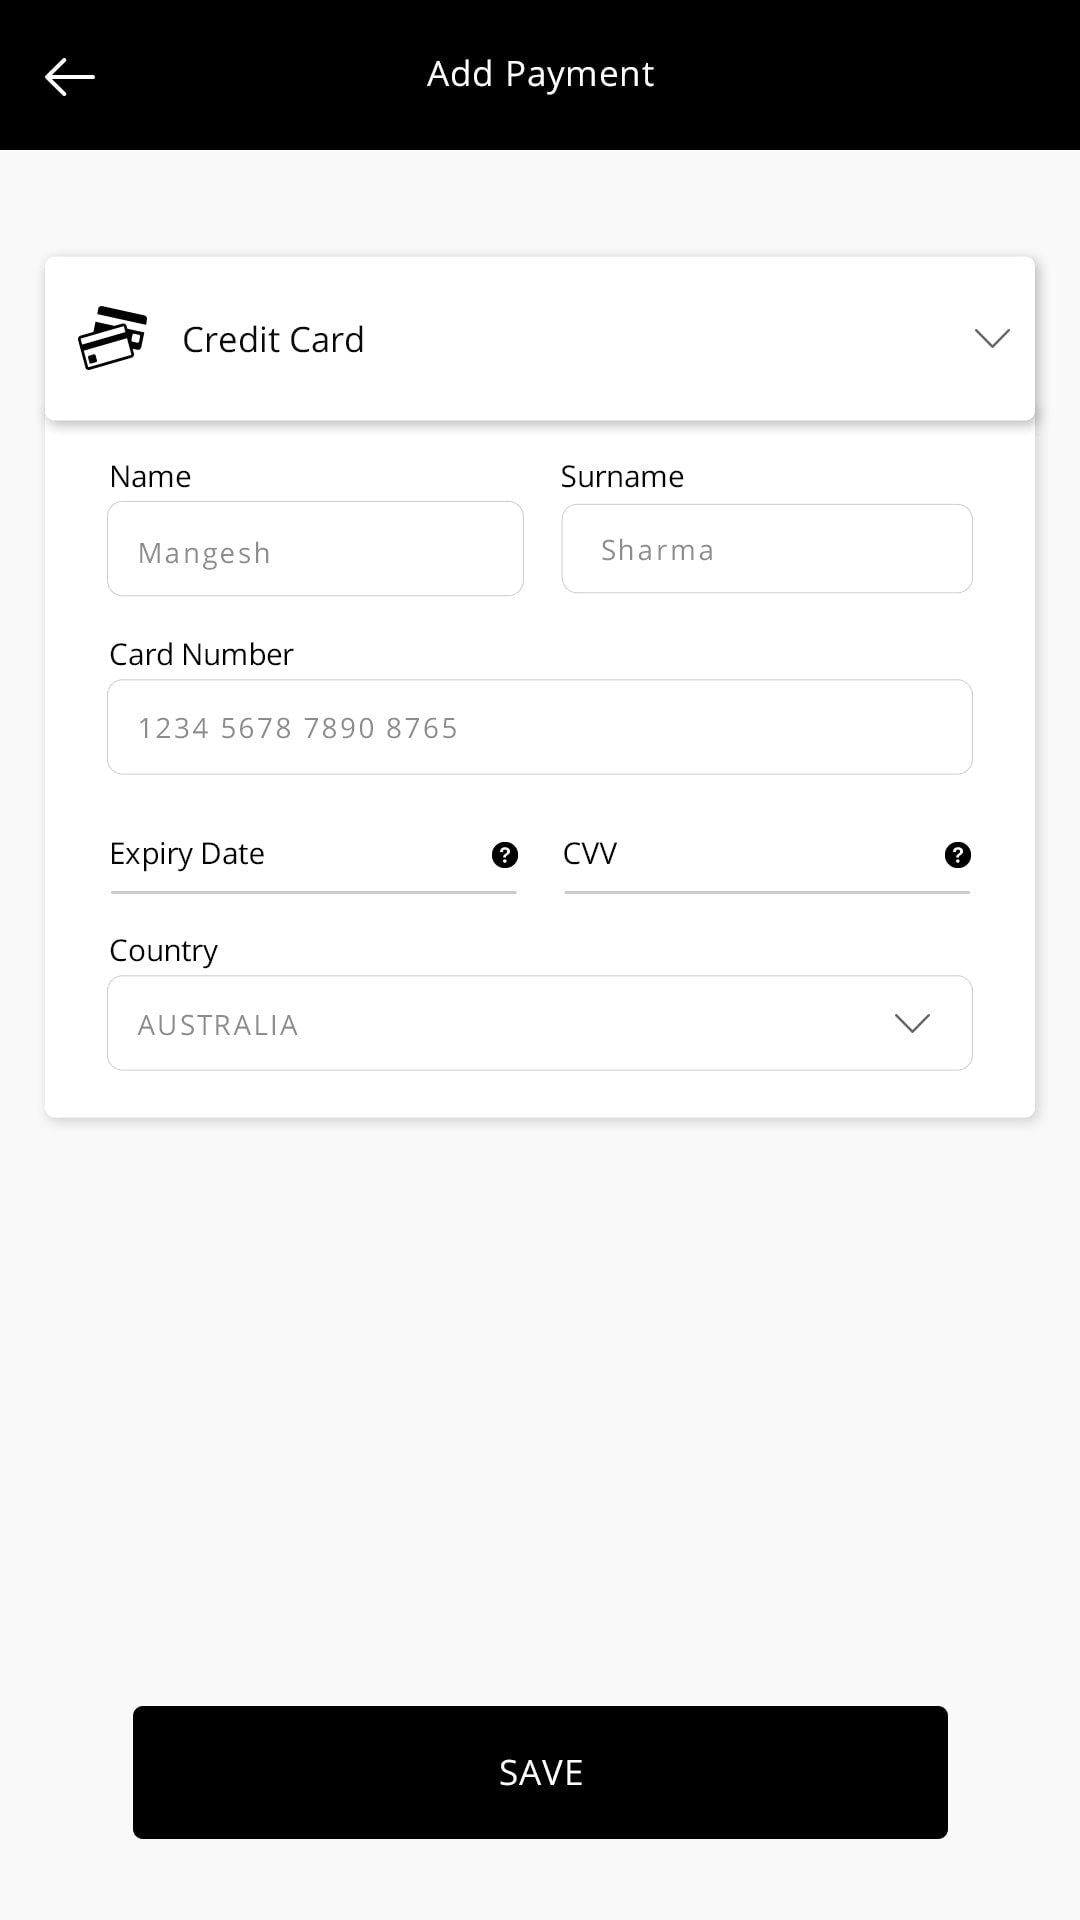 Lyft clone app  add payment screen